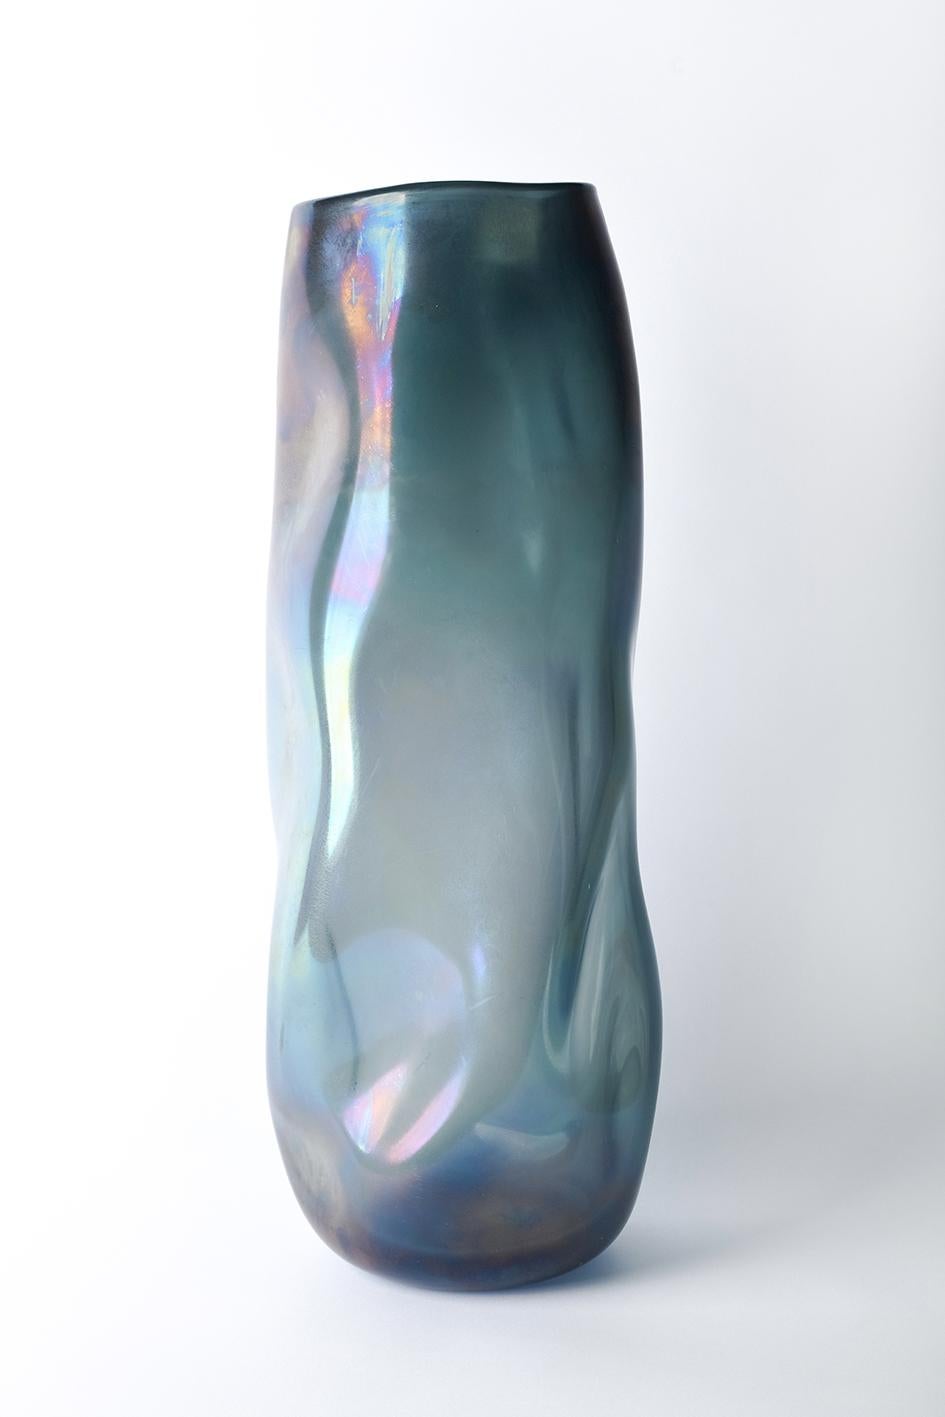 Vase canal de Purho
Dimensions : D 15 x H 58 cm
MATERIAL : Verre de Murano
Disponible dans d'autres couleurs.

Canal est un vase de la Collection Laguna conçue par Ludovica+Roberto Palomba pour Purho au printemps 2022.
Comme les canaux de la lagune